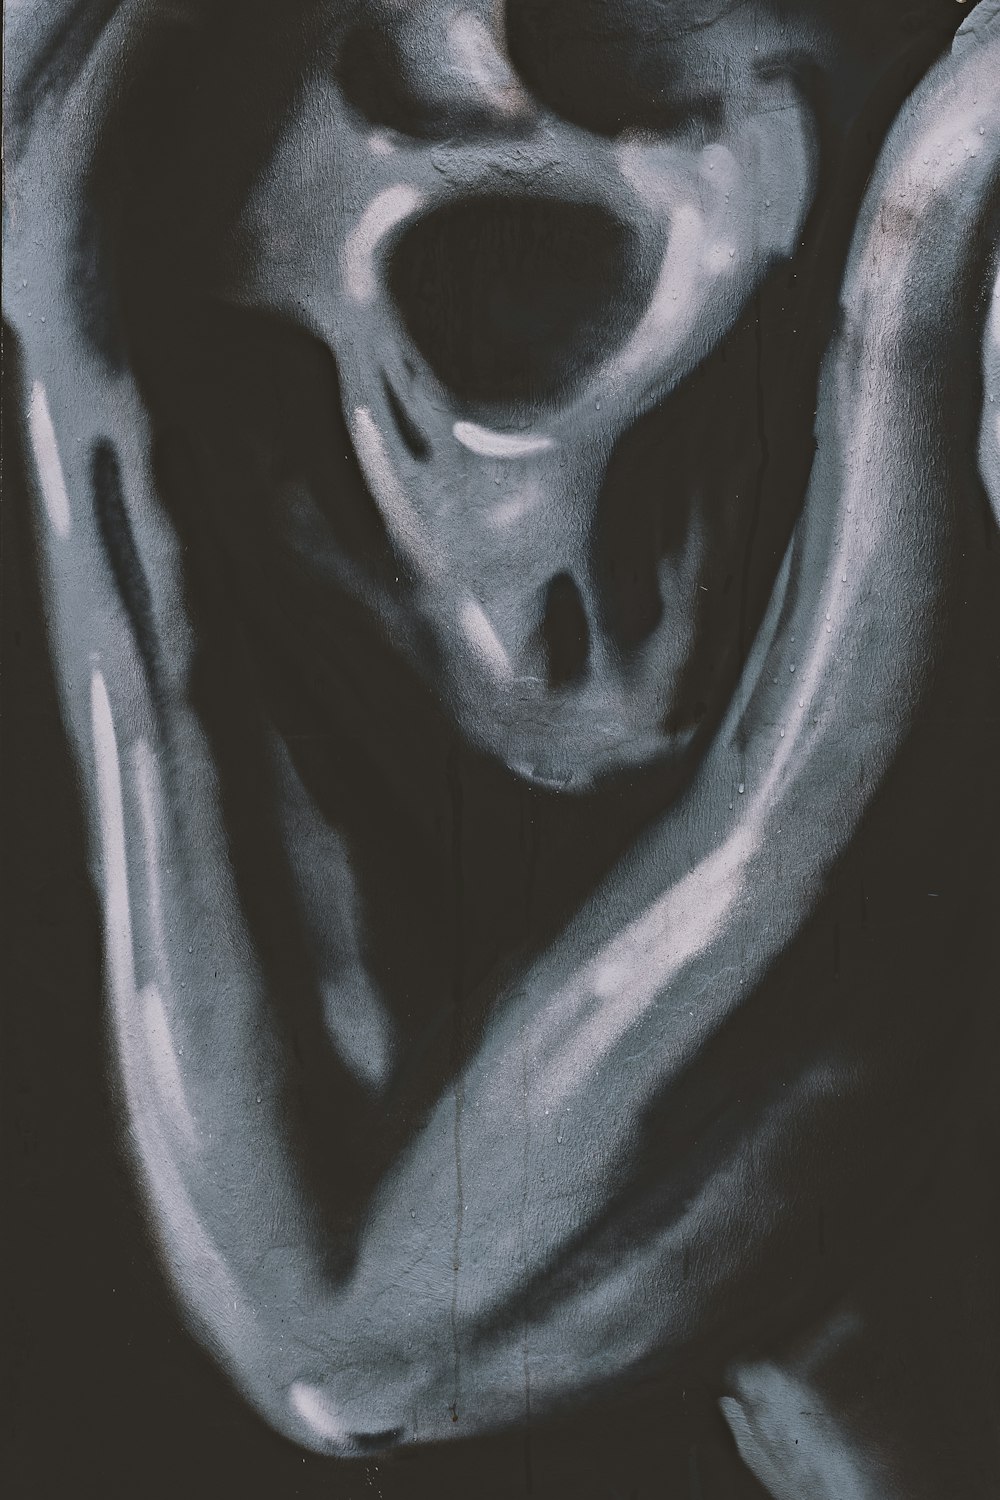 Una foto en blanco y negro de un cráneo humano